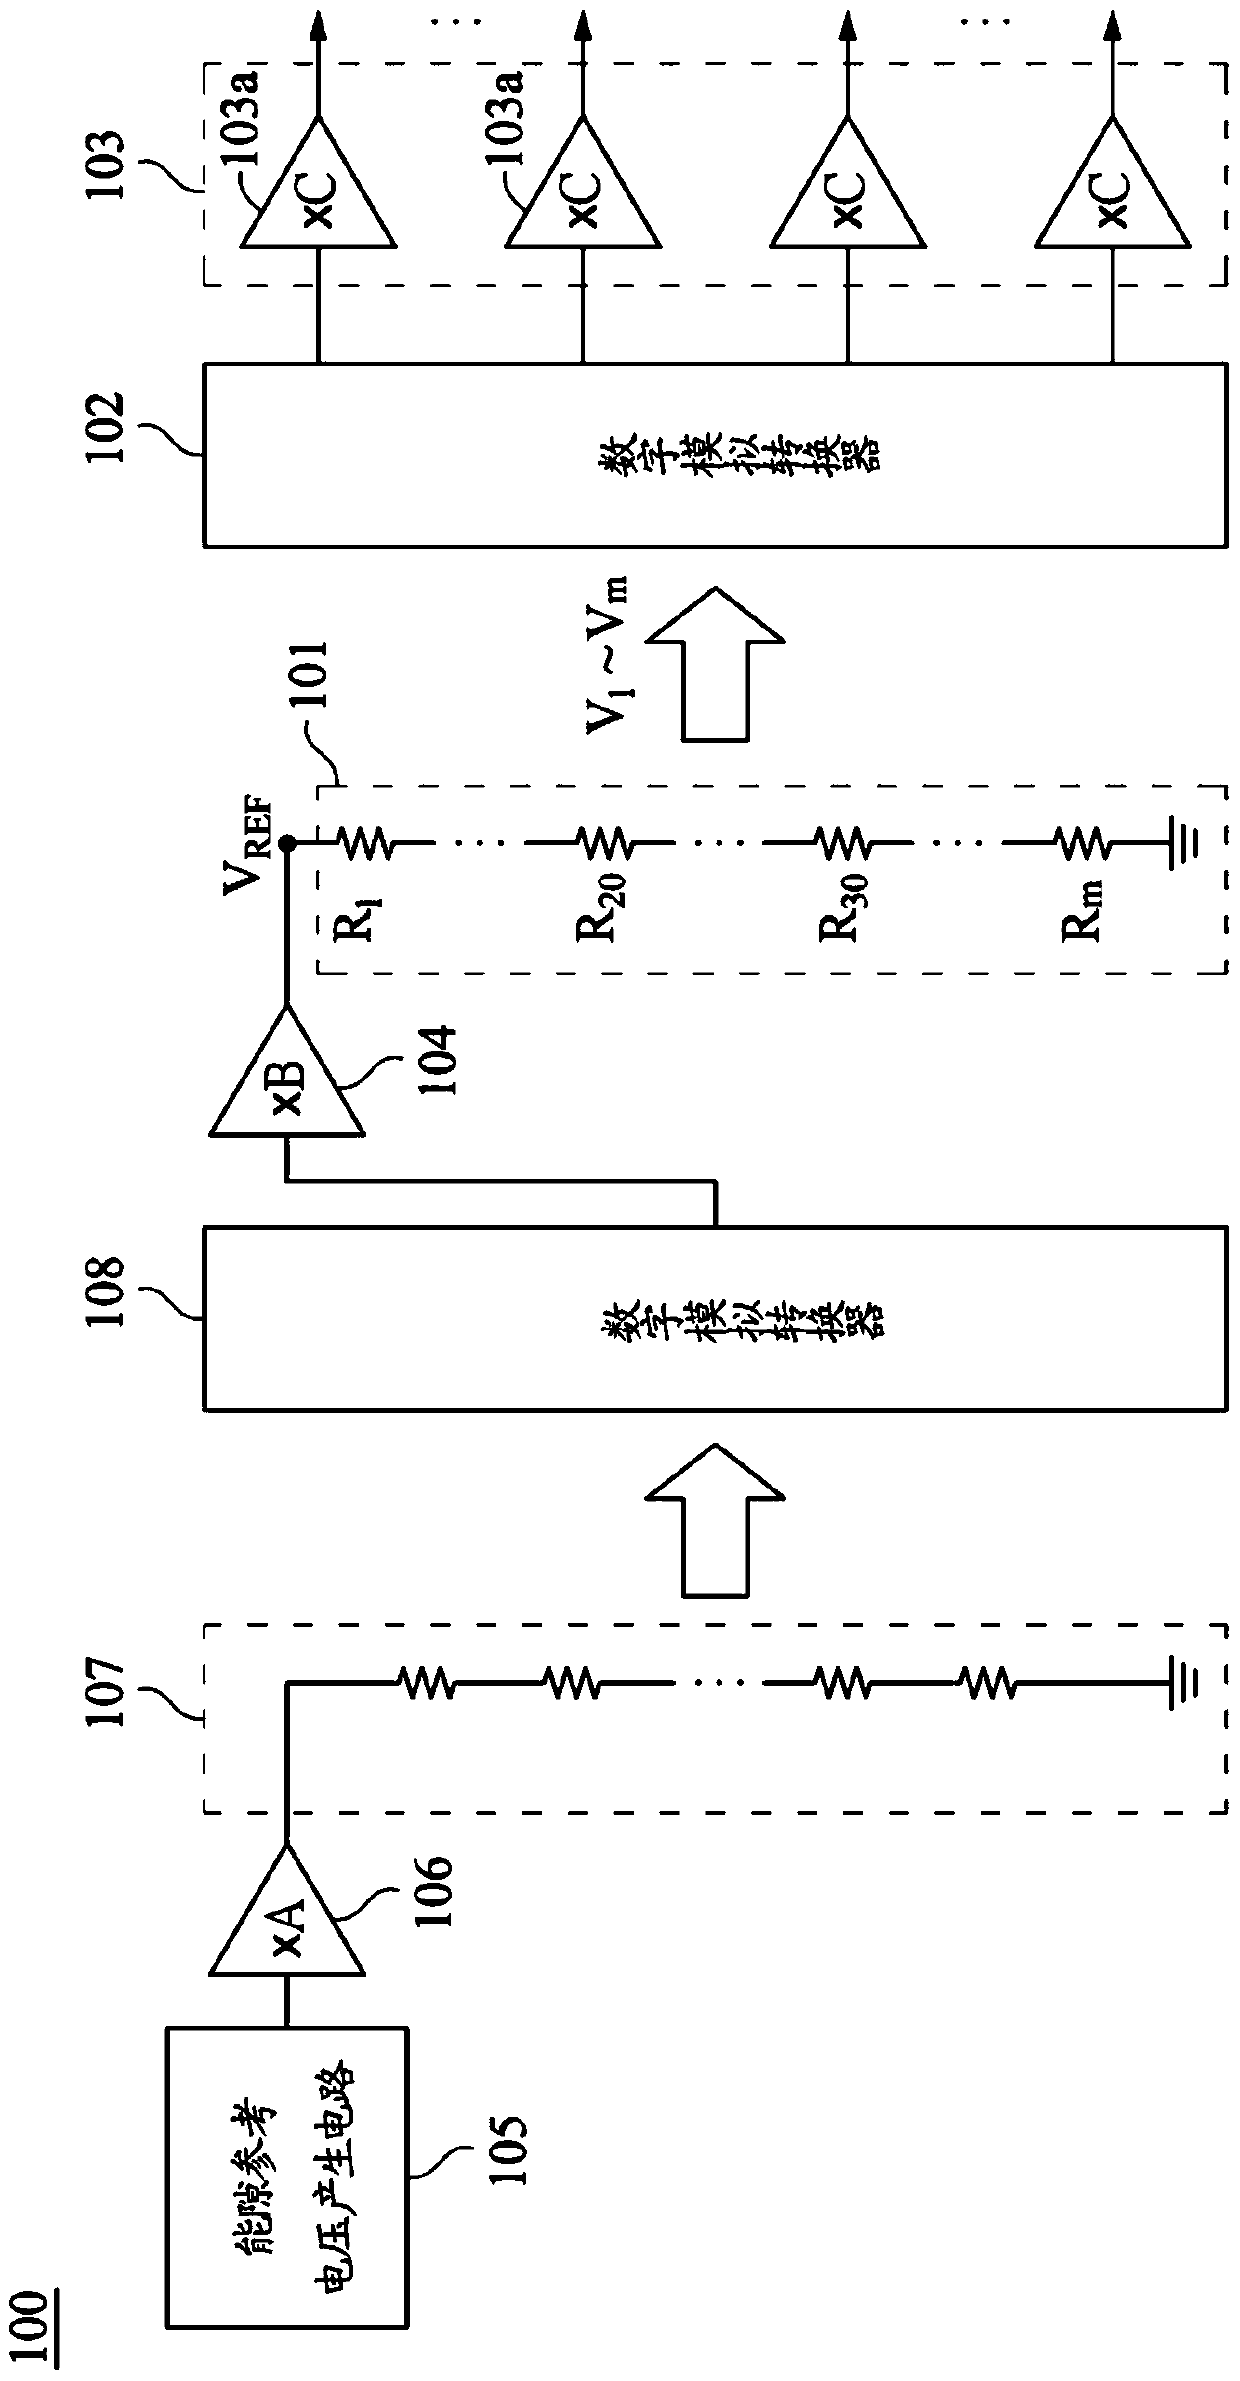 Gamma voltage generating circuit